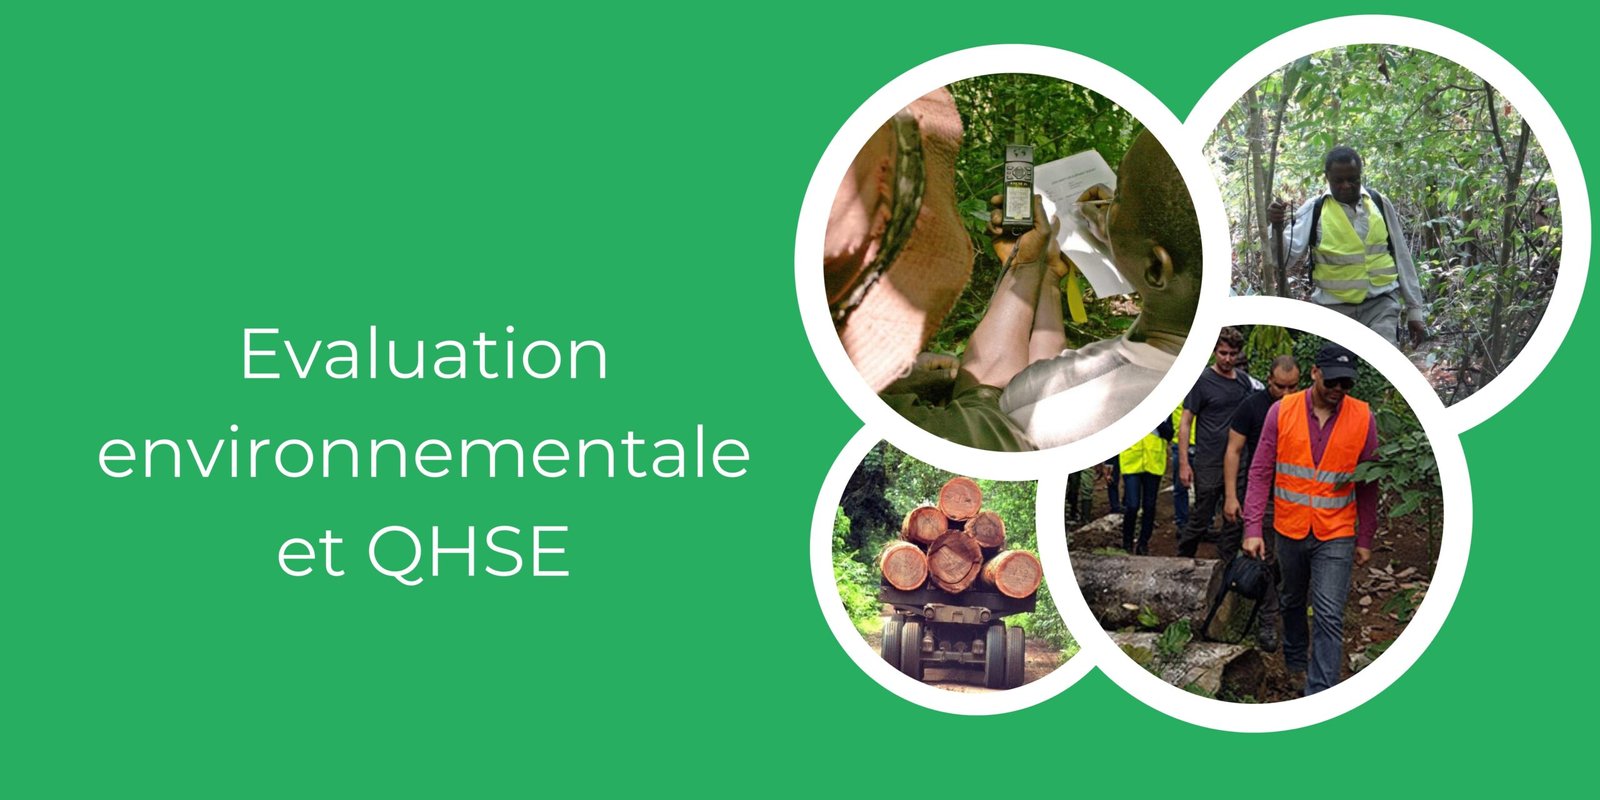 Evaluation environnementale et QHSE